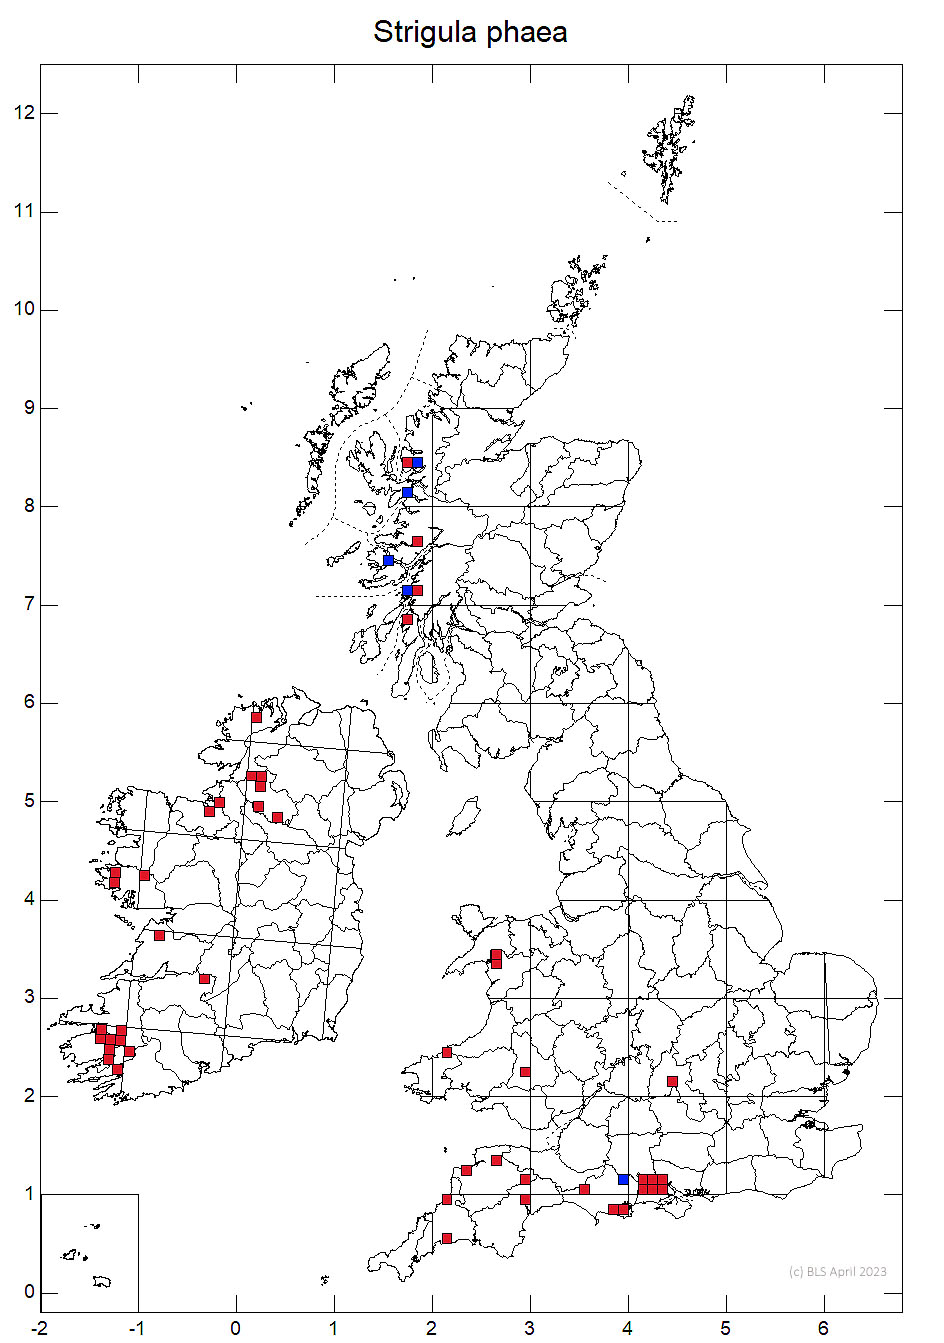 Strigula phaea 10km sq distribution map